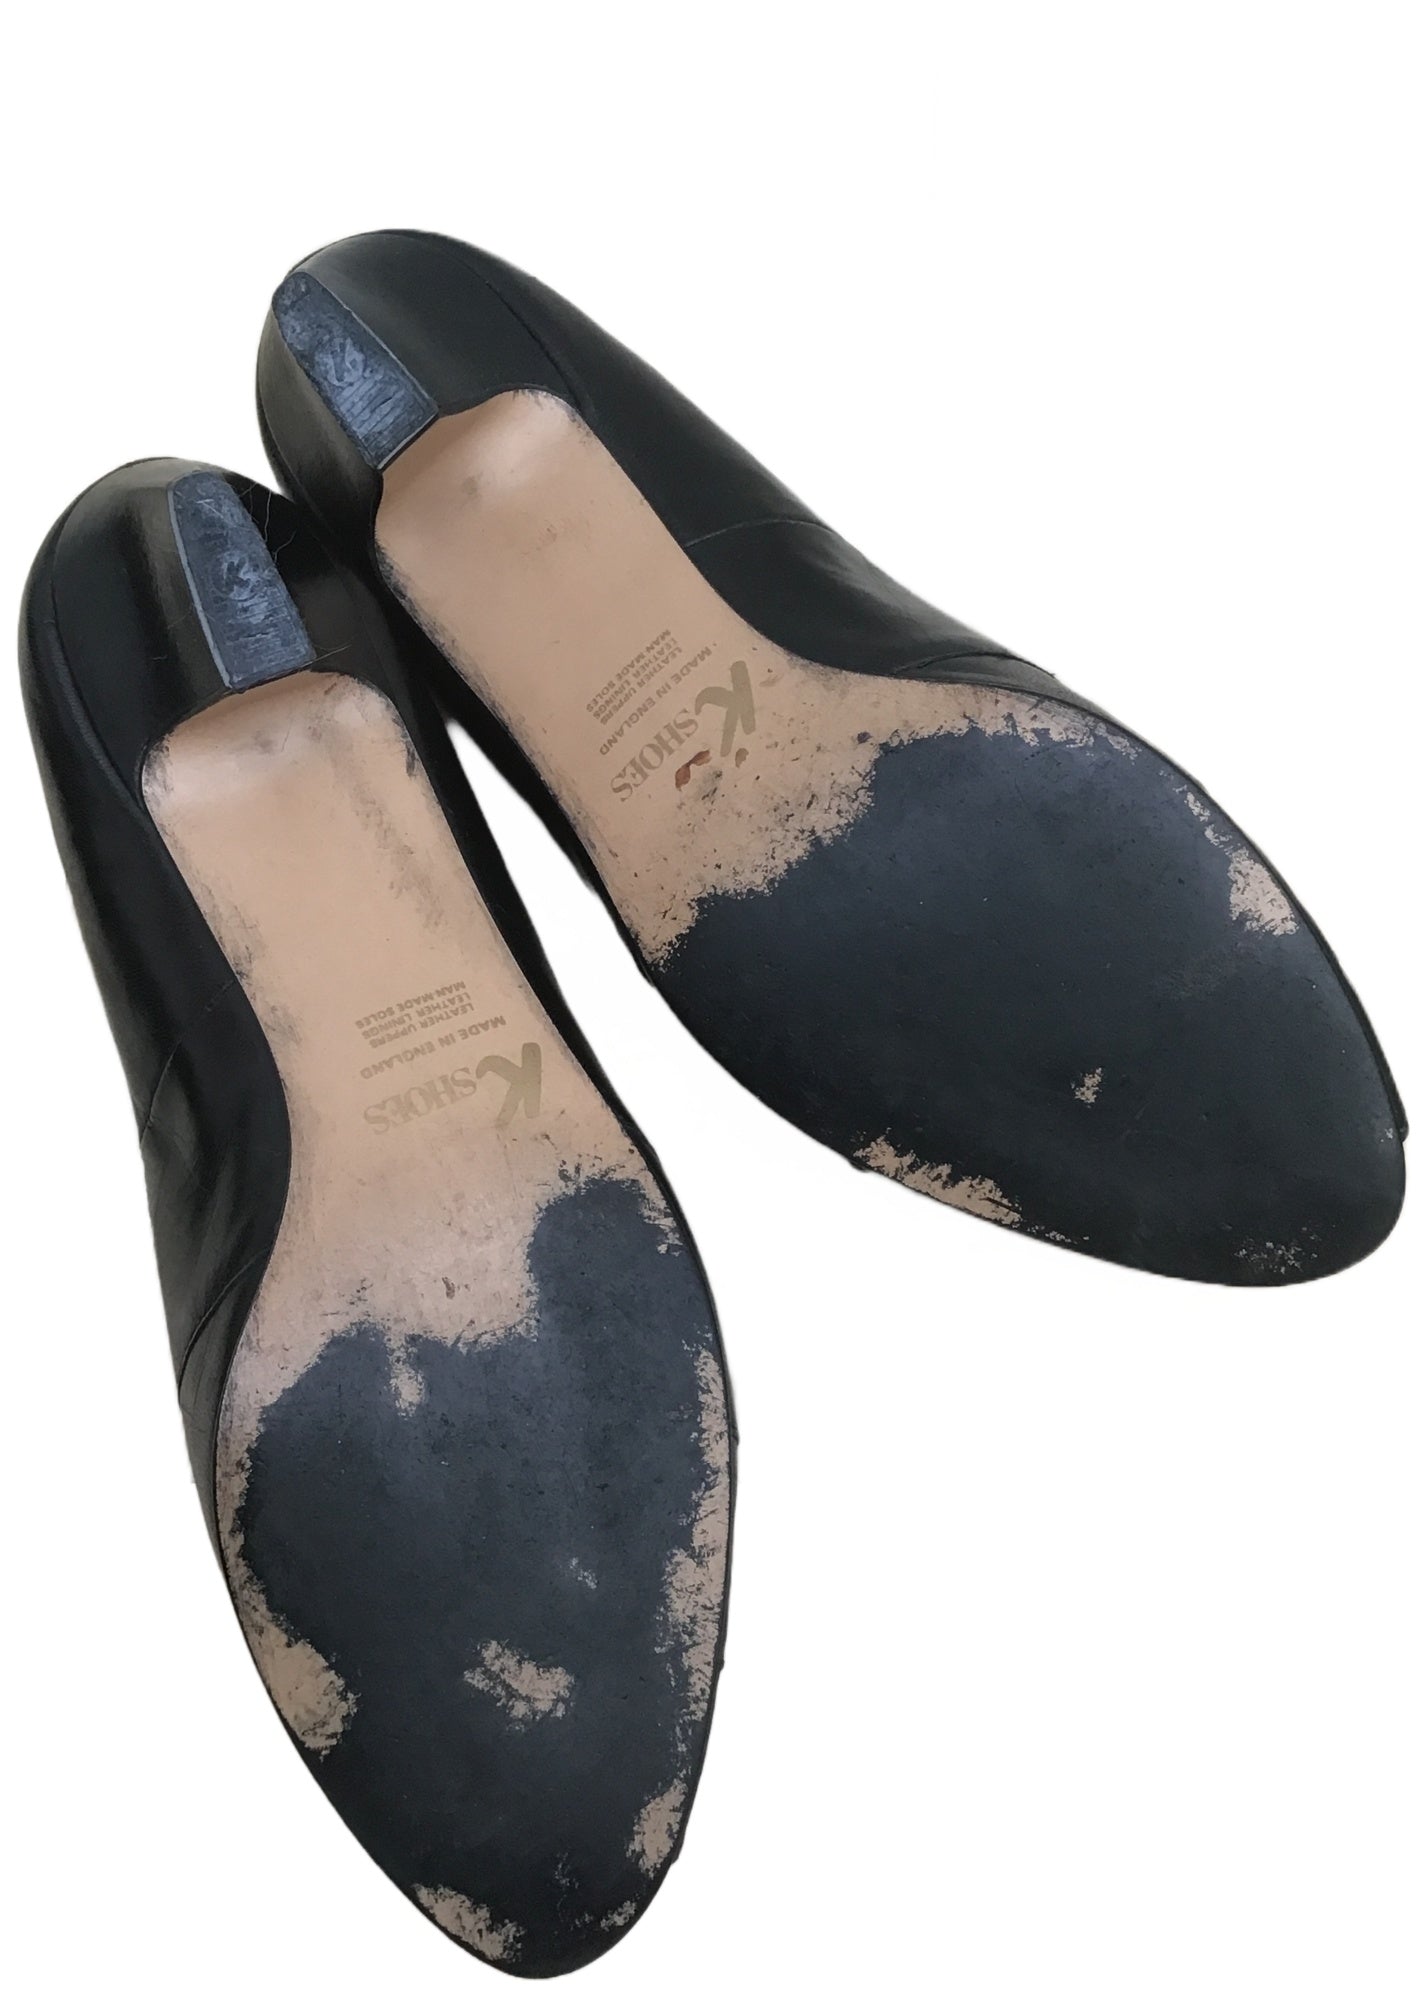 Vintage 80s Black Leather K Peep Toe Pumps Shoes • Clarkes Shoes • size UK7